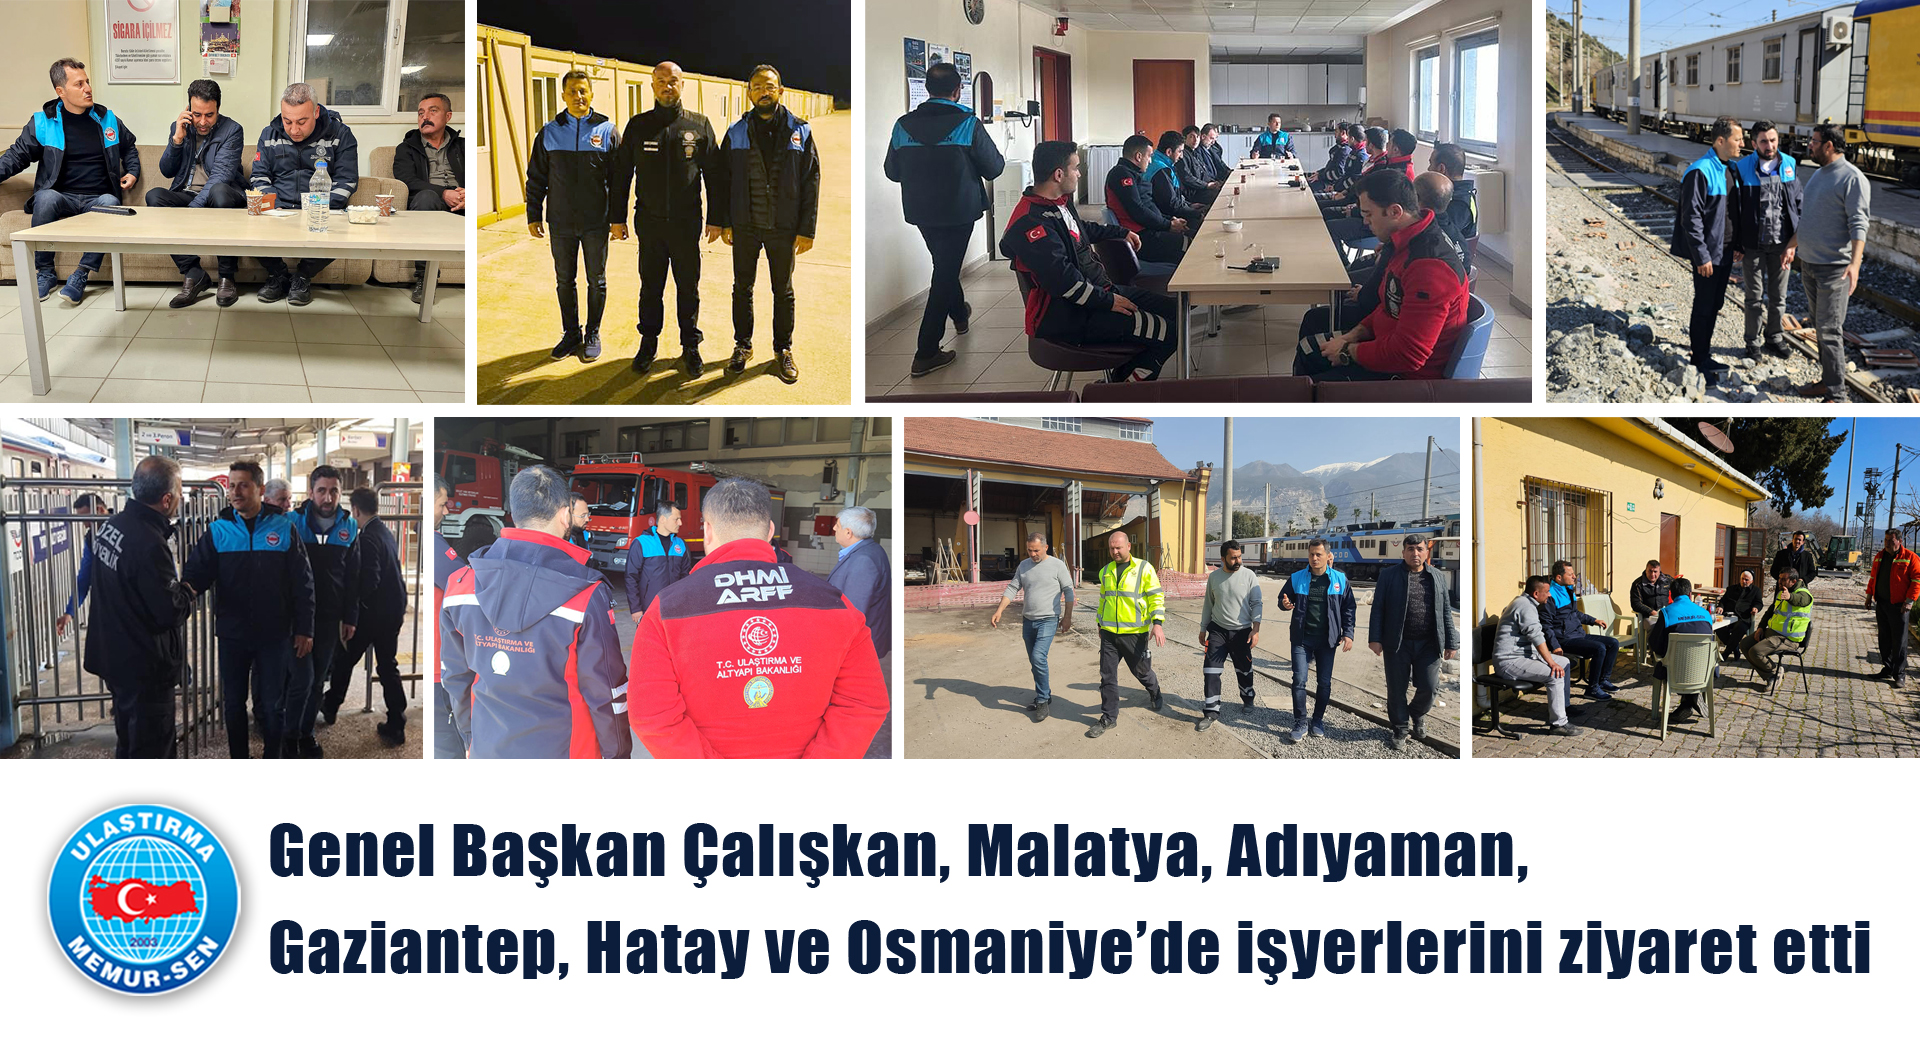 Genel Başkan Çalışkan, Malatya, Adıyaman, Gaziantep, Hatay ve Osmaniye’de işyerlerini ziyaret etti